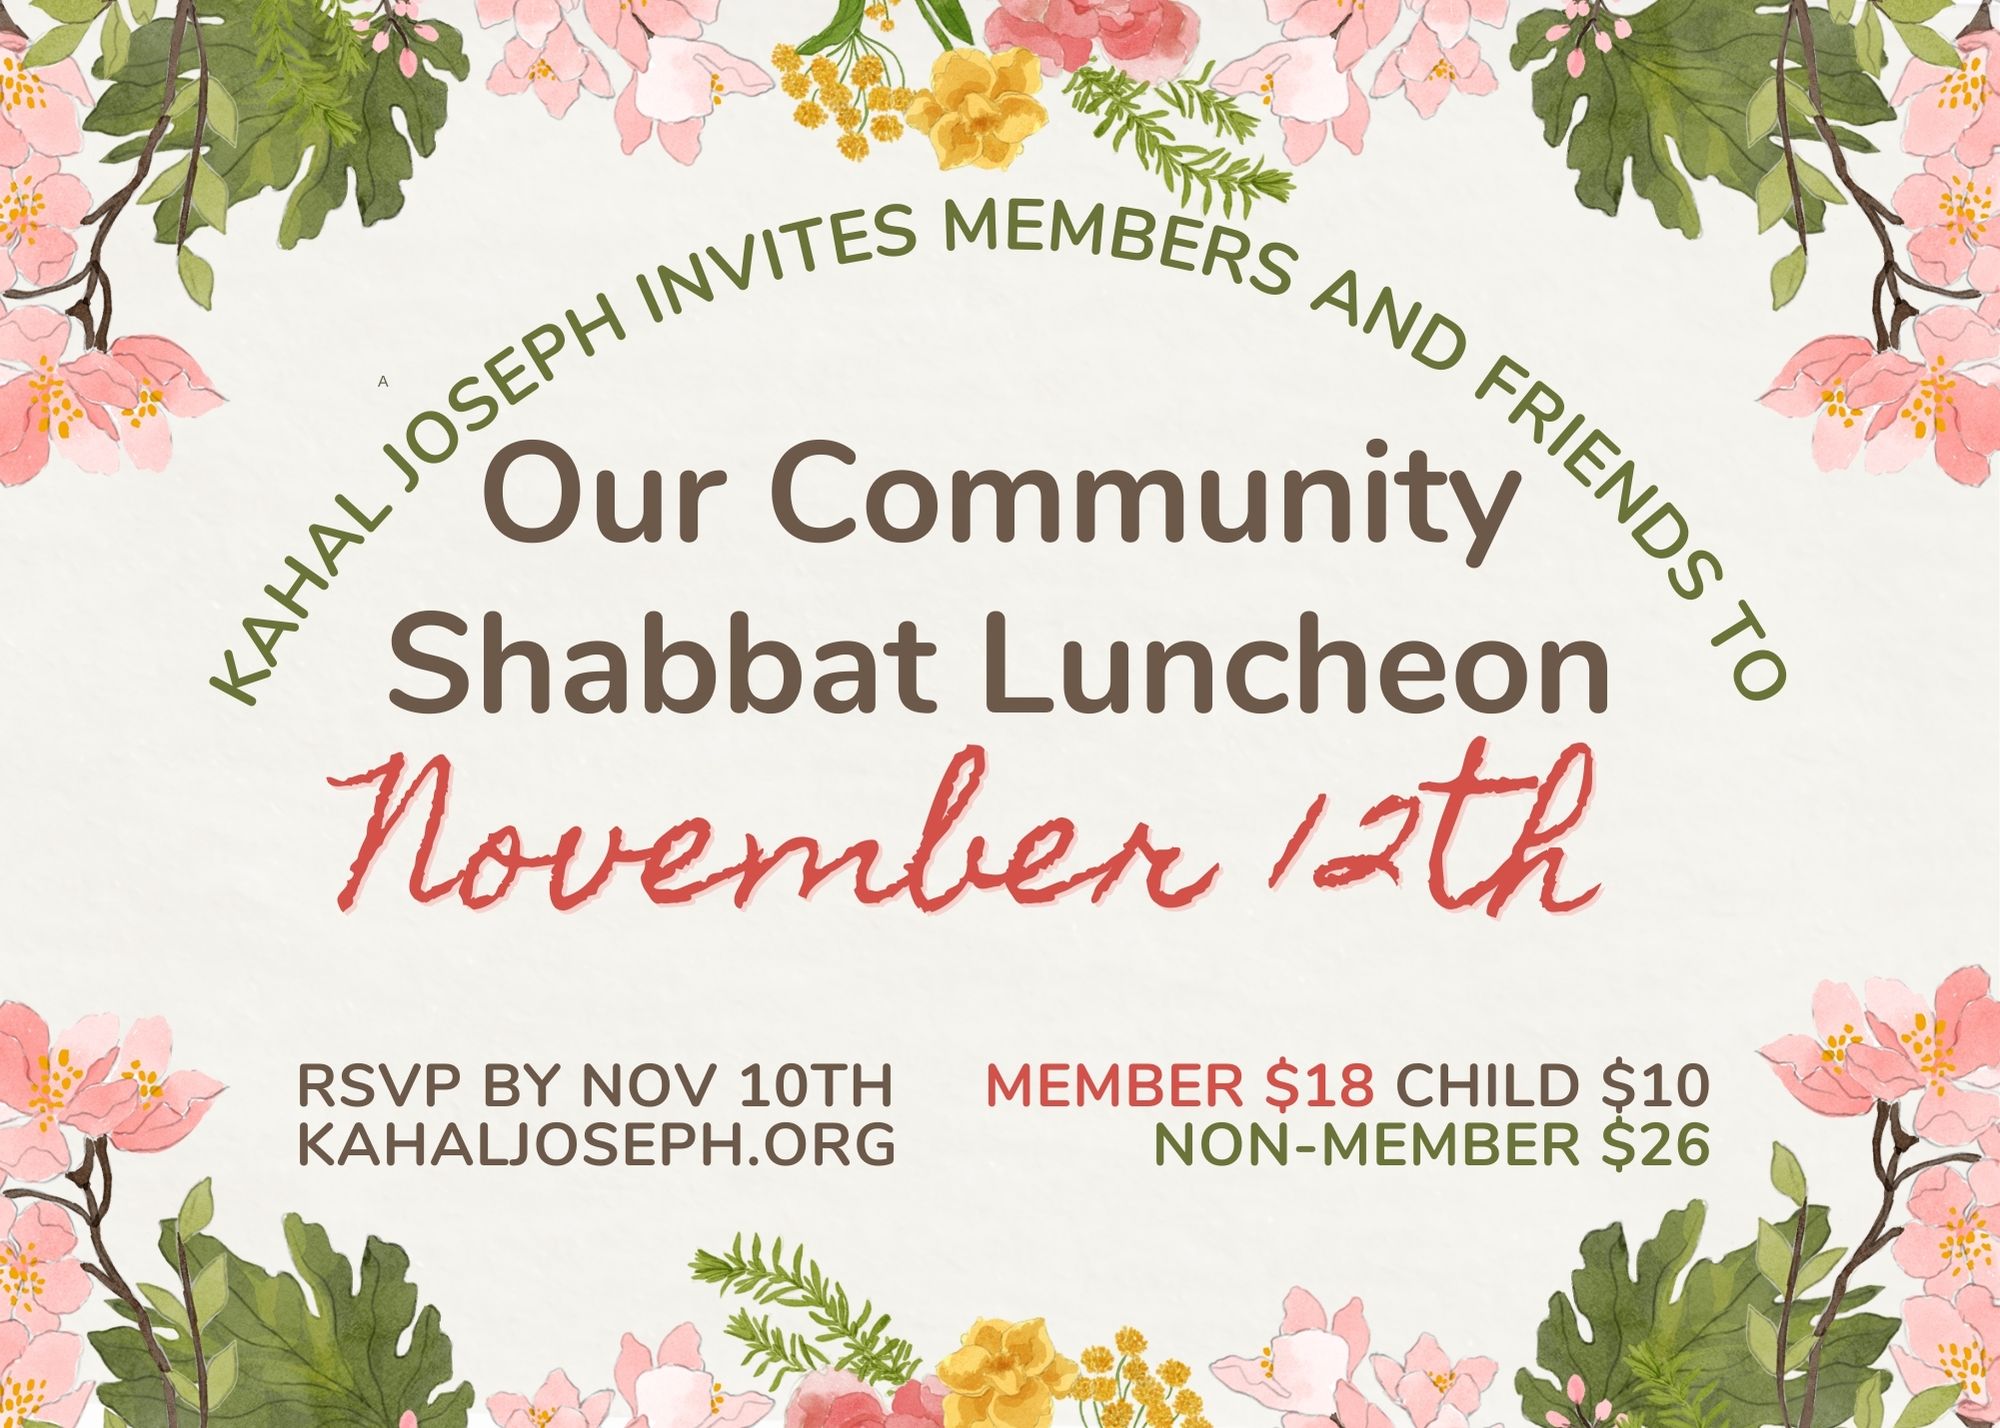 Shabbat Luncheon, Nov 12th